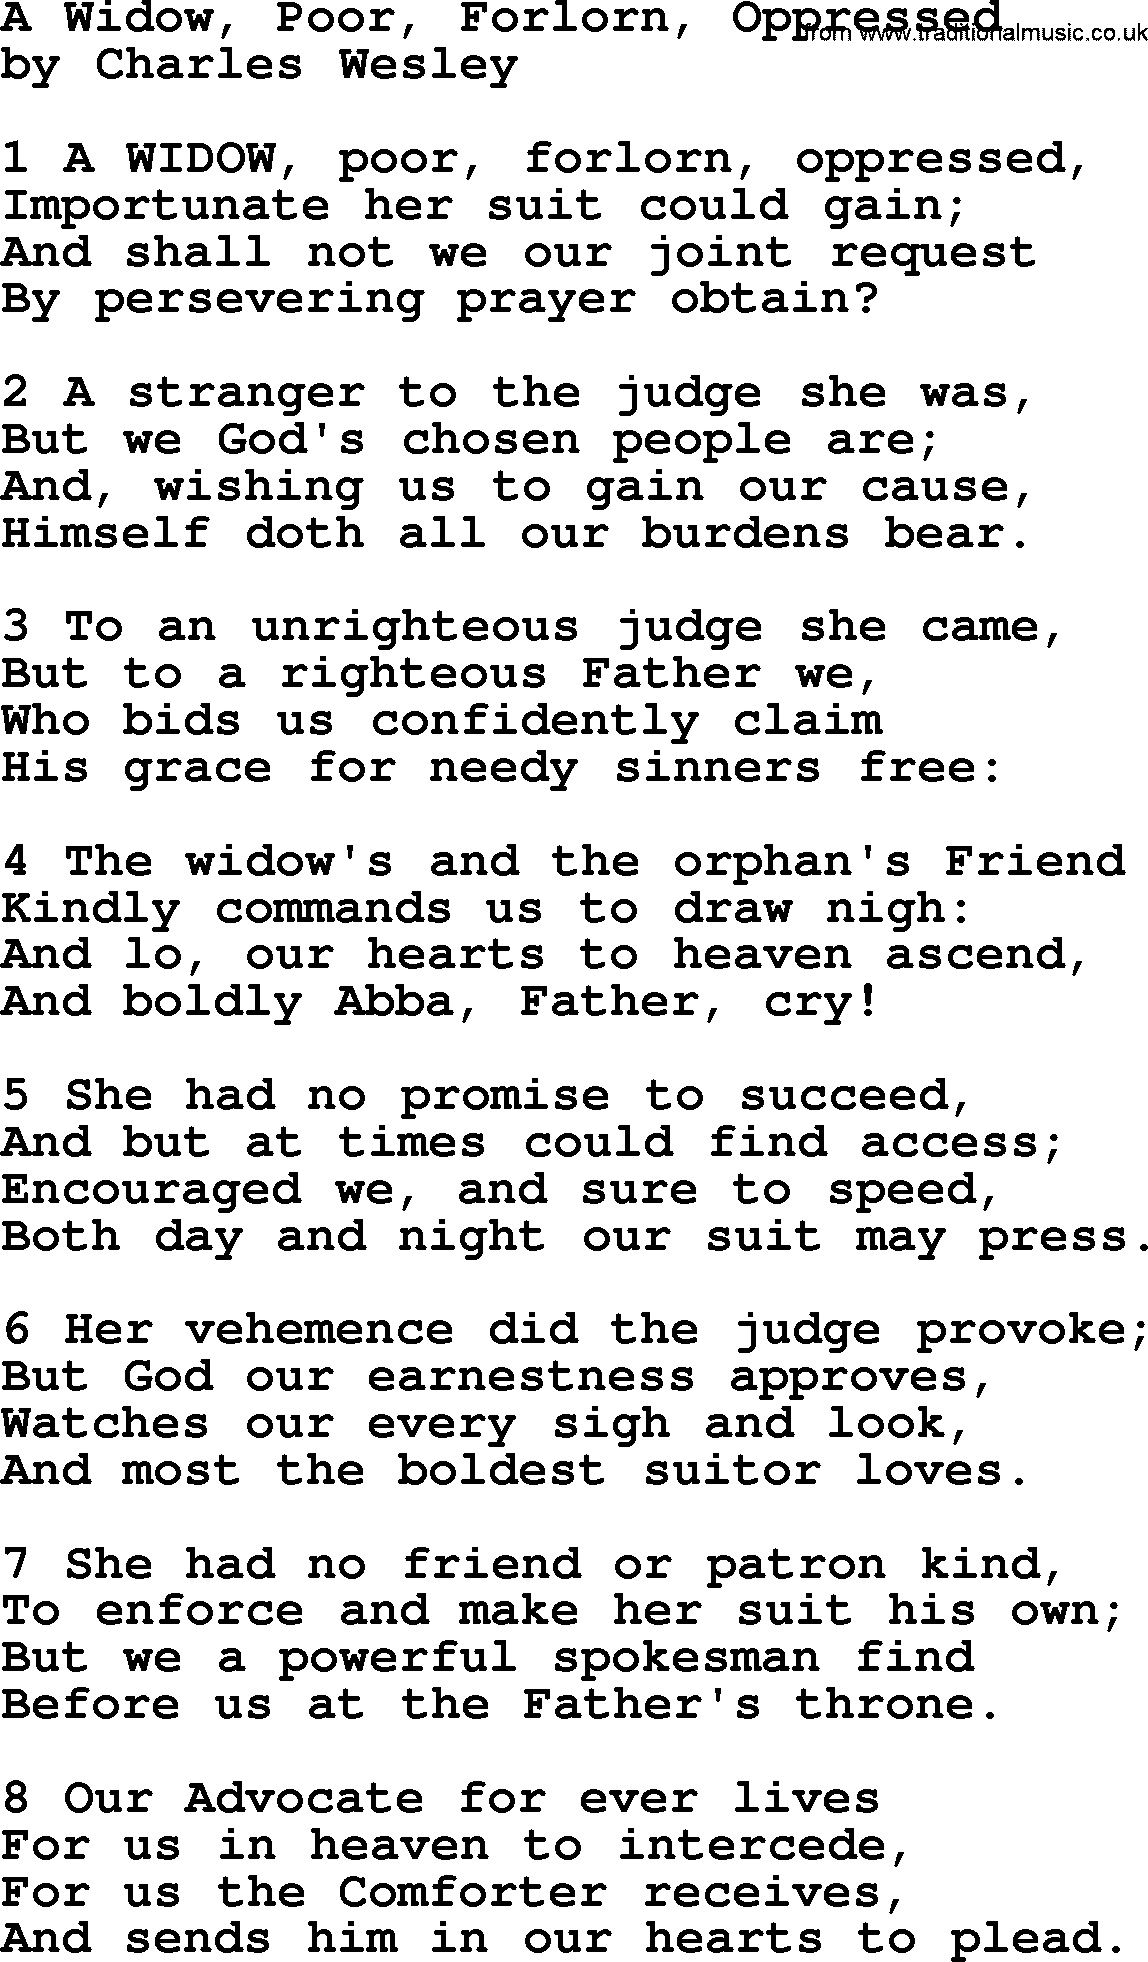 Charles Wesley hymn: A Widow, Poor, Forlorn, Oppressed, lyrics